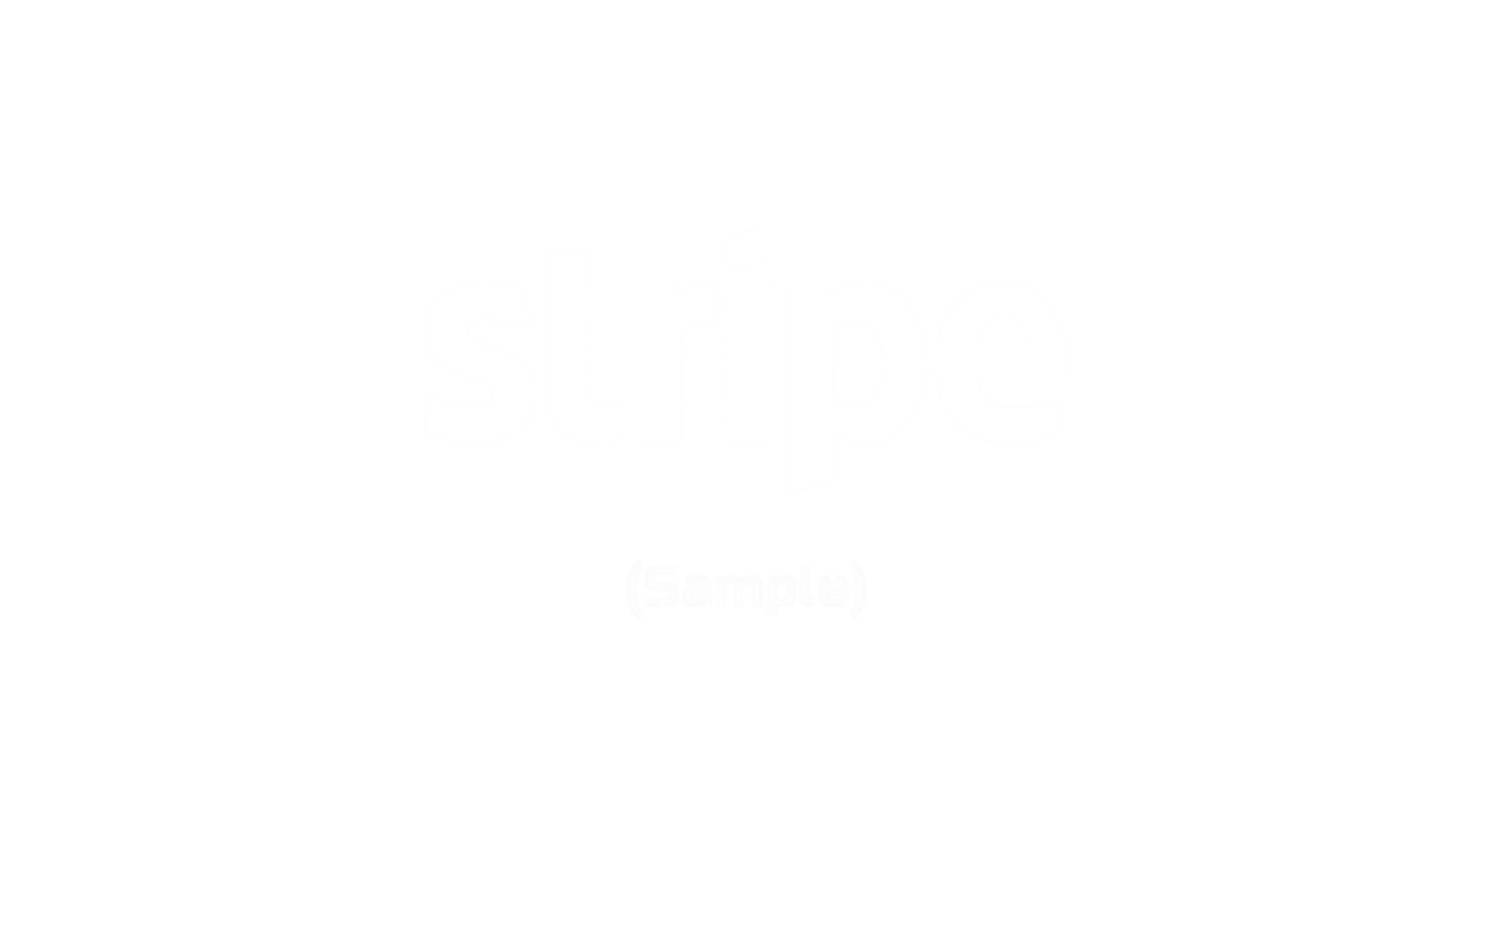 Stripe Samples